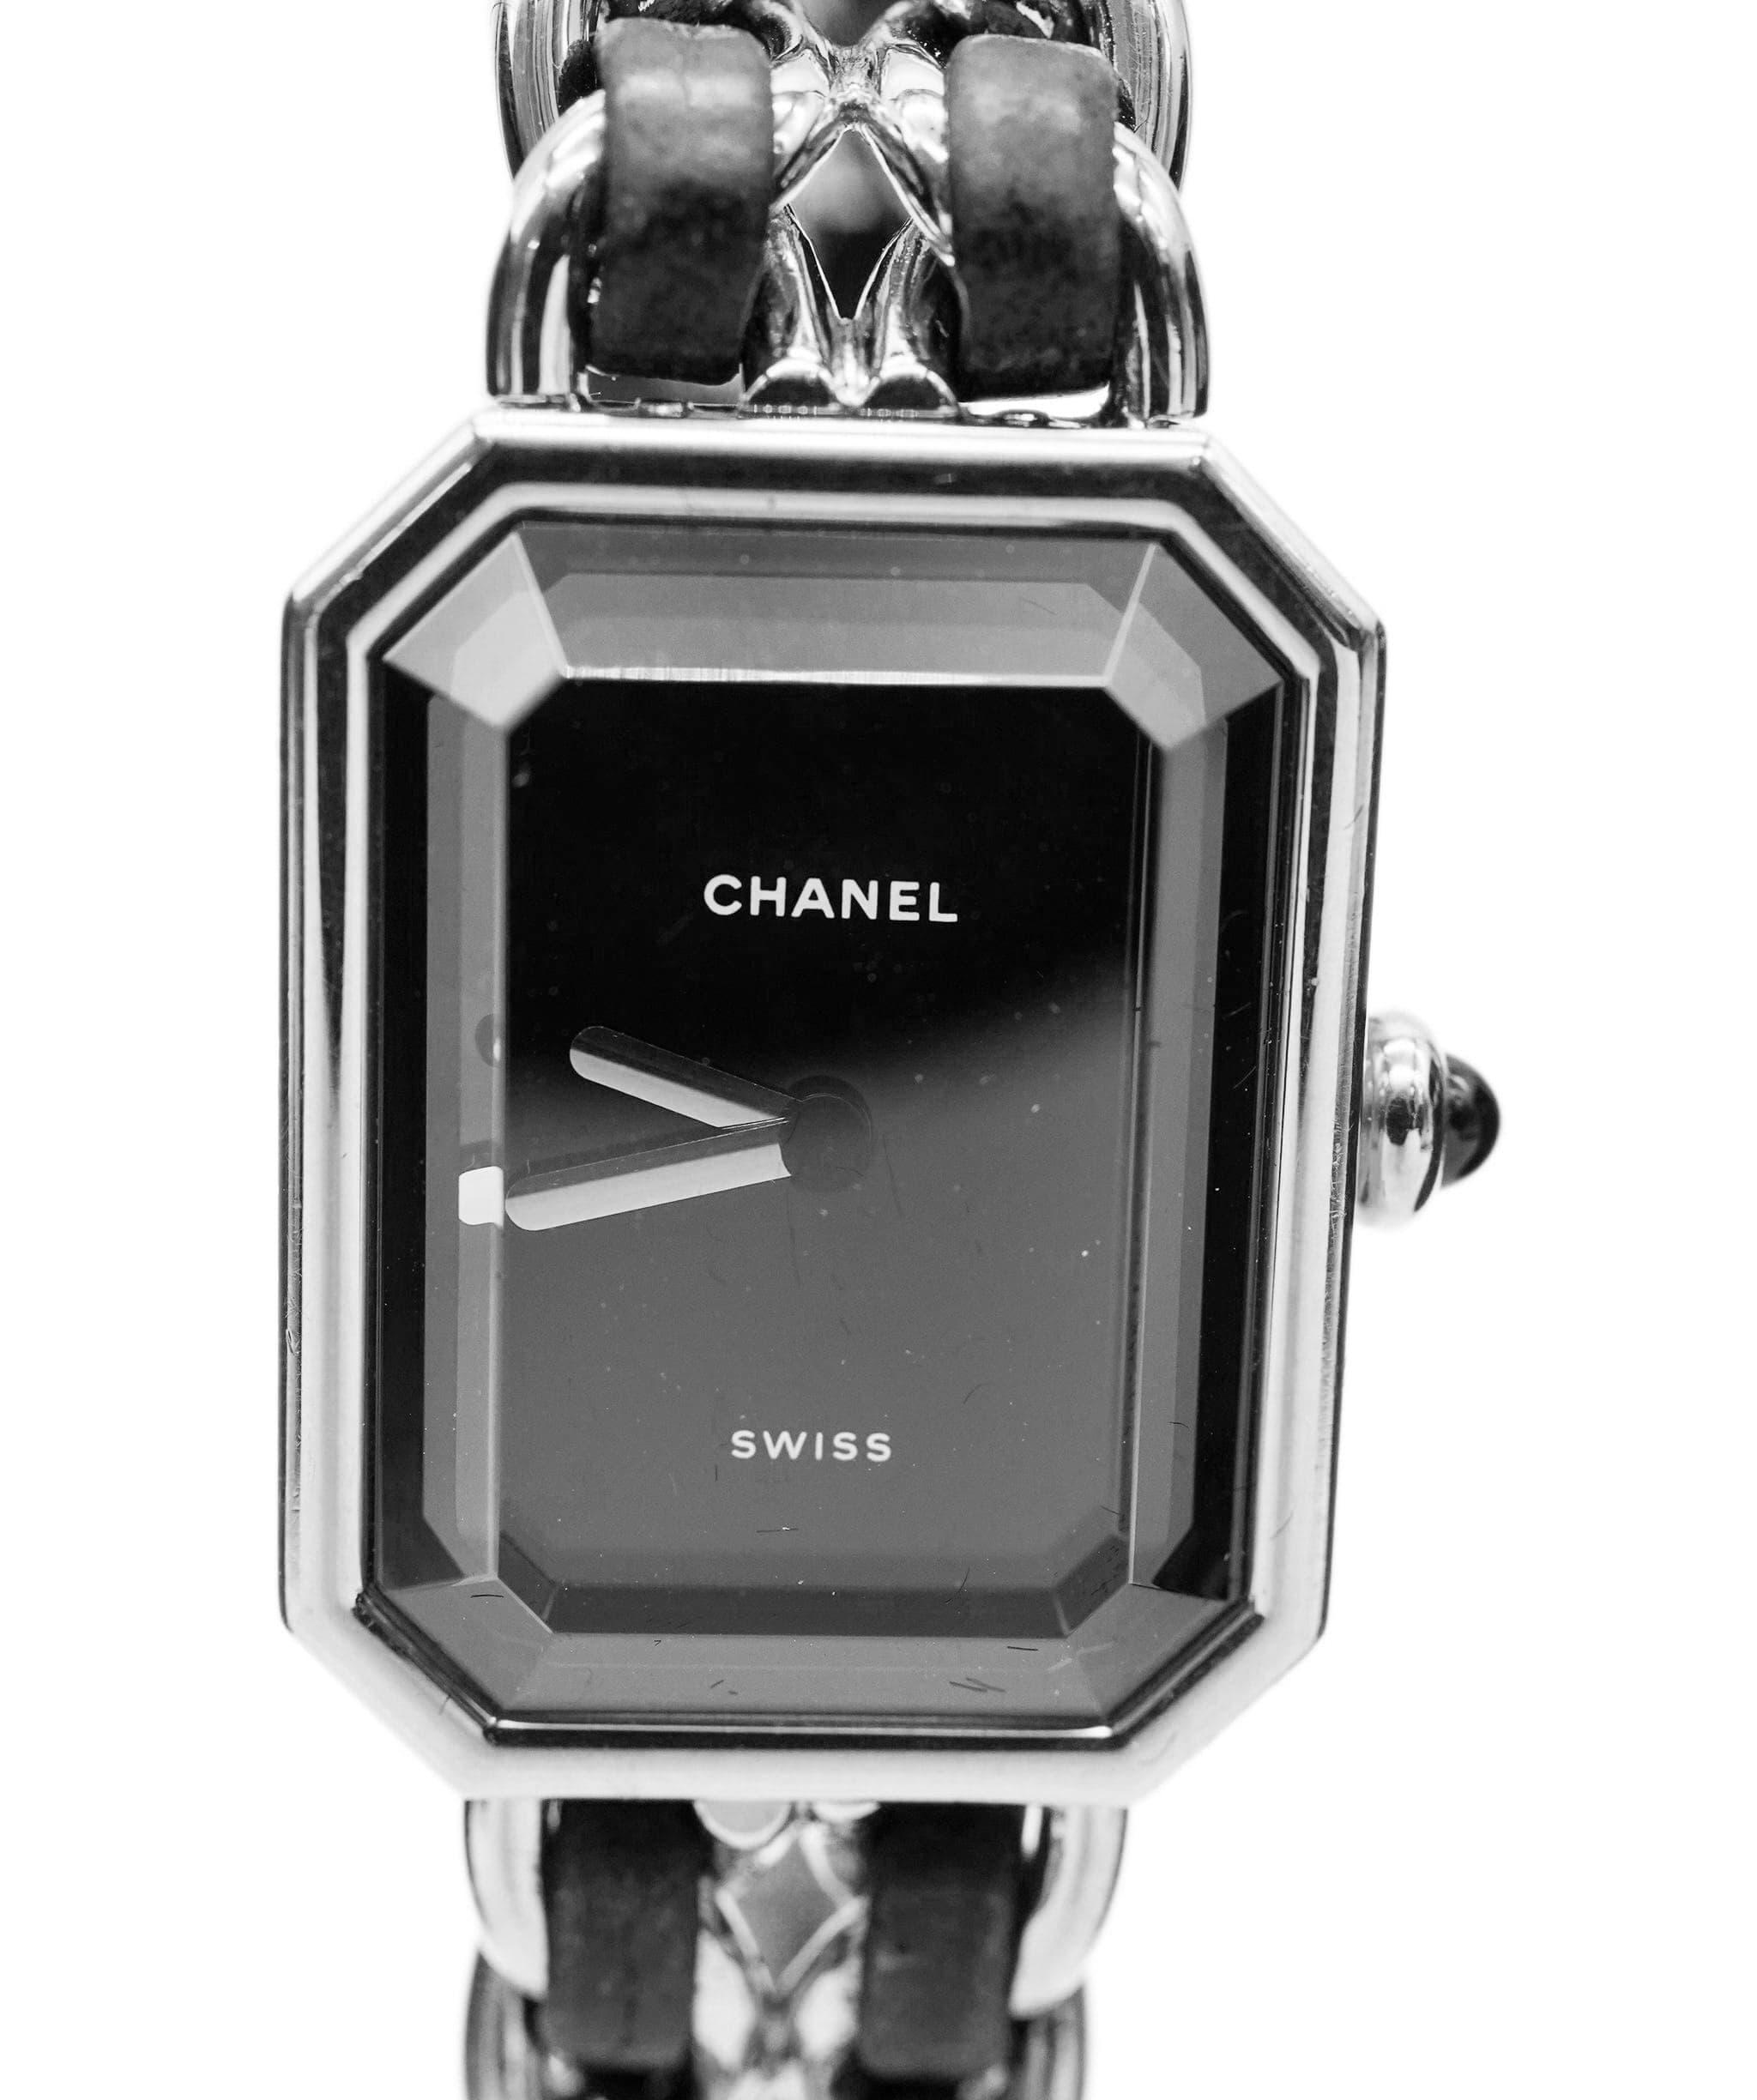 Chanel Chanel premiere L watch ASC1770